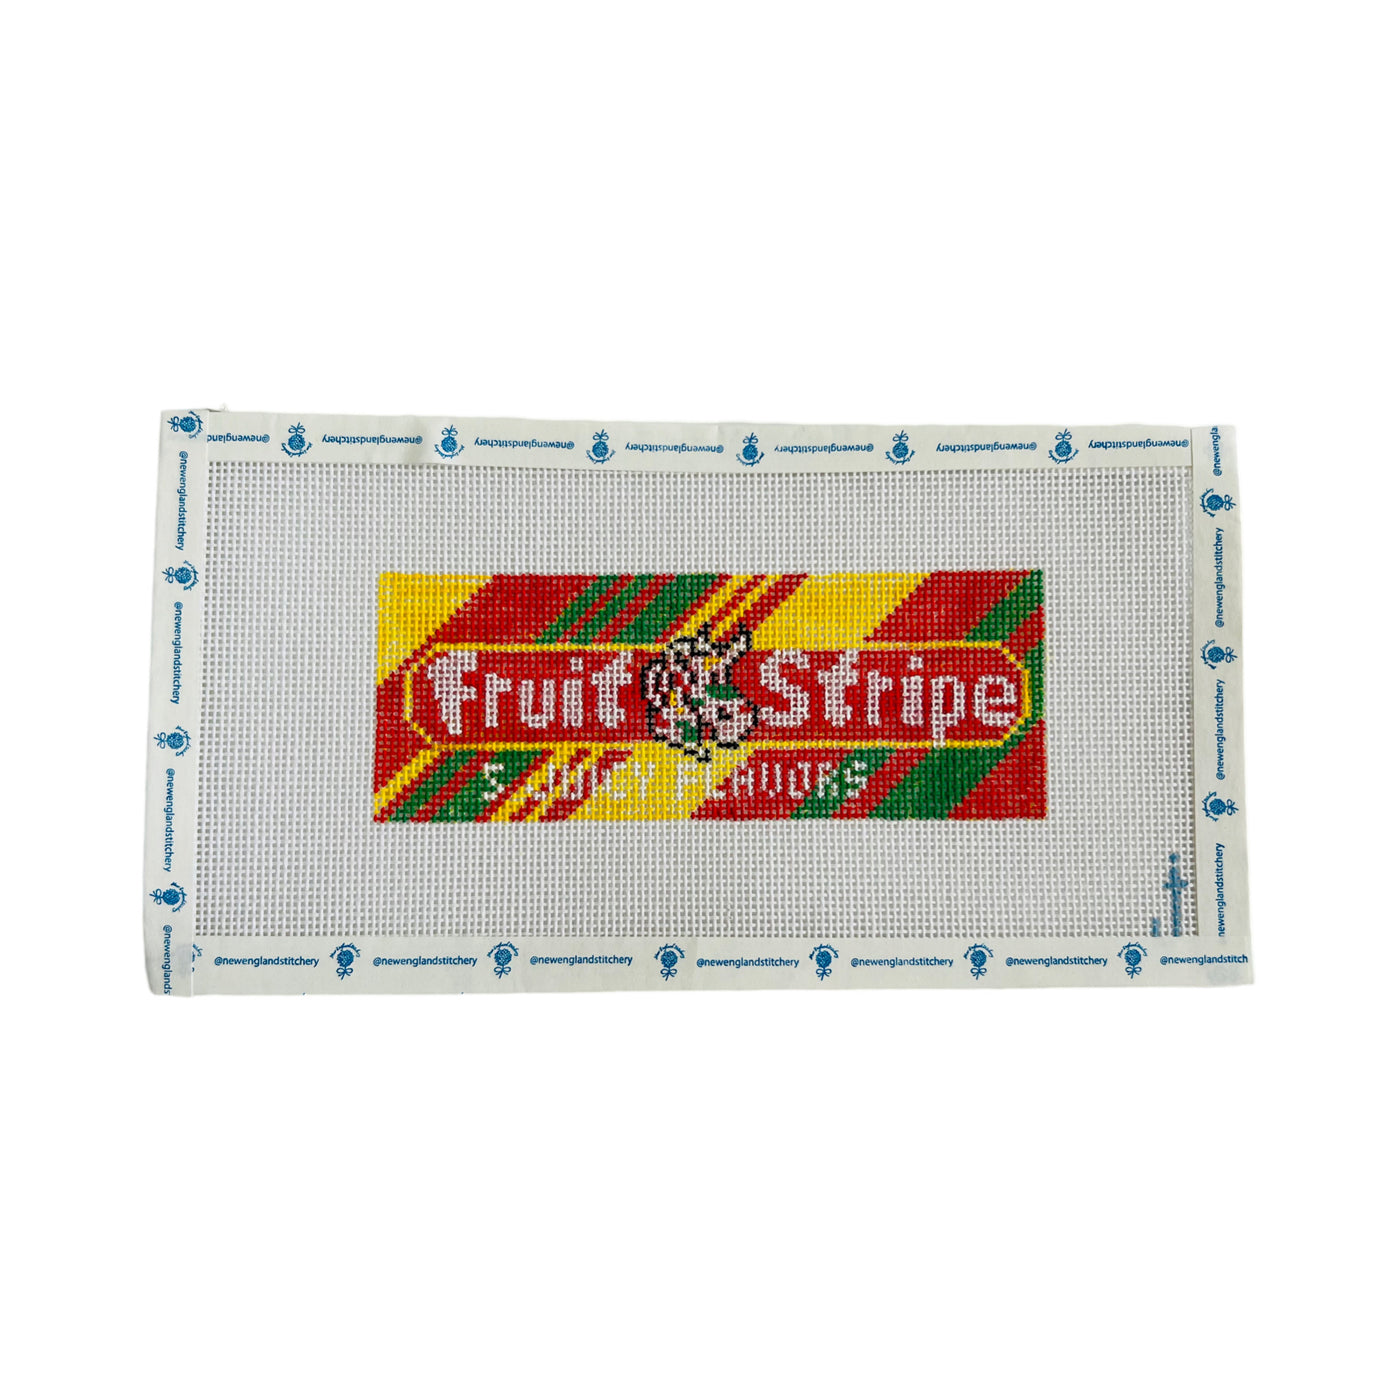 Fruit Gum